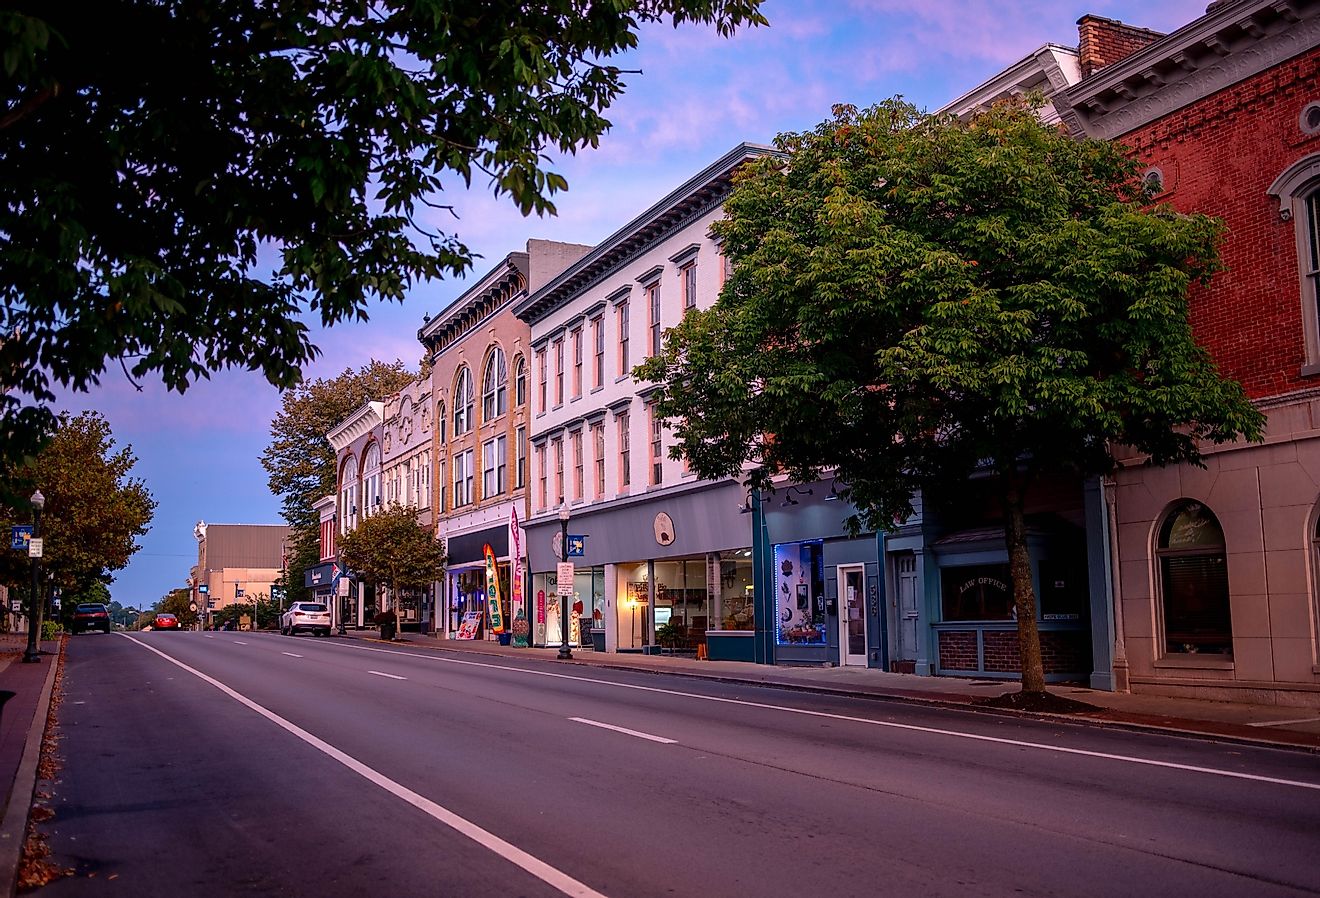 Downtown Shelbyville, Kentucky. Image credit Blue Meta via Shutterstock.com